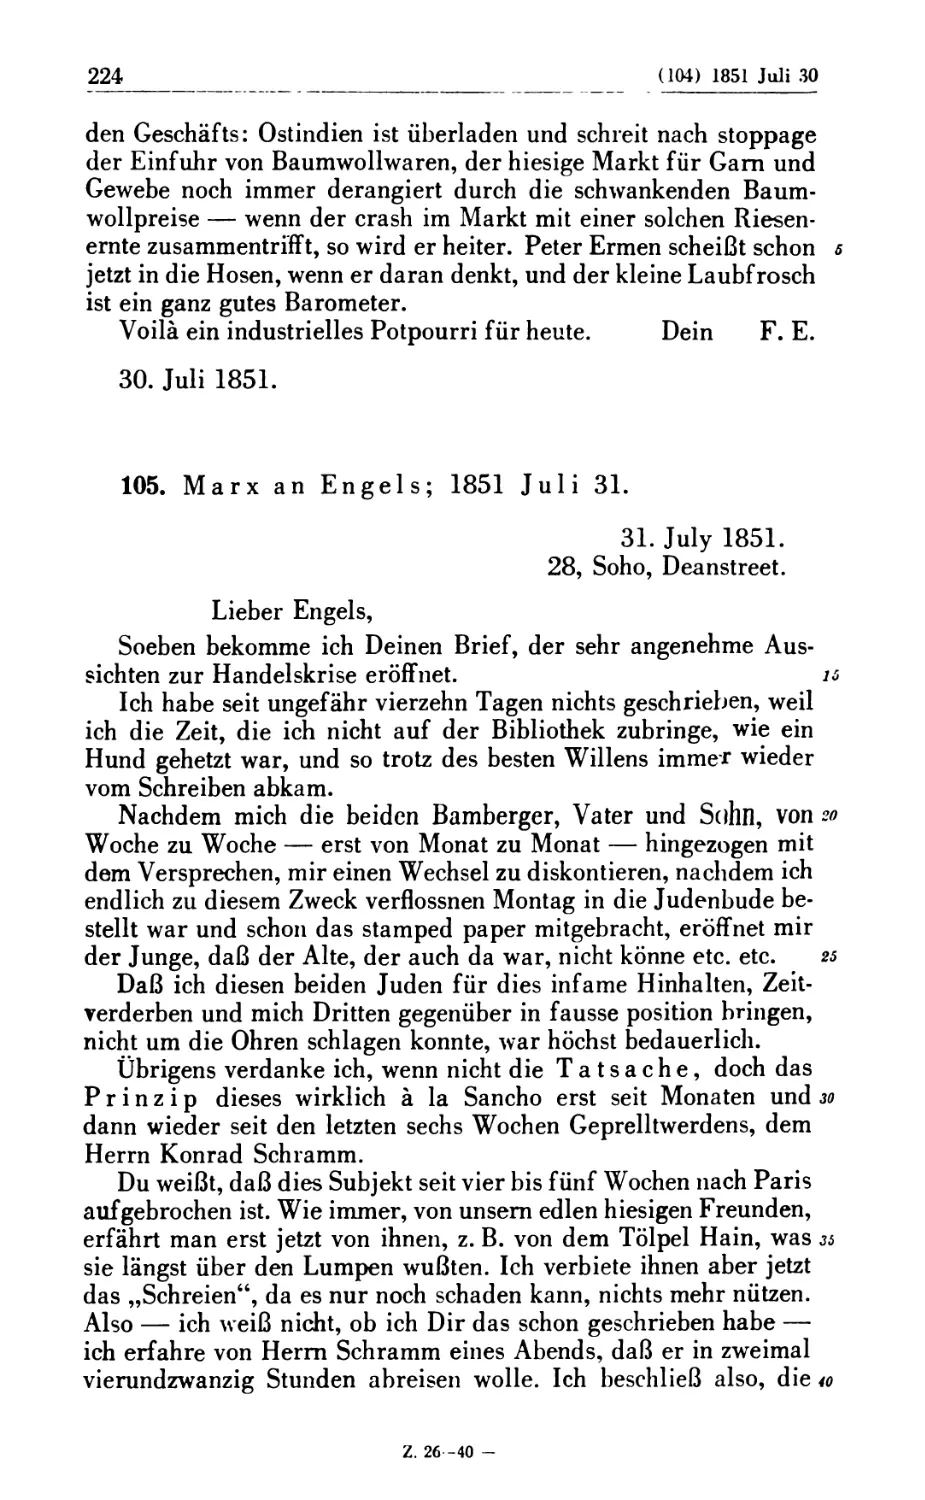 105. Marx an Engels; 1851 Juli 31